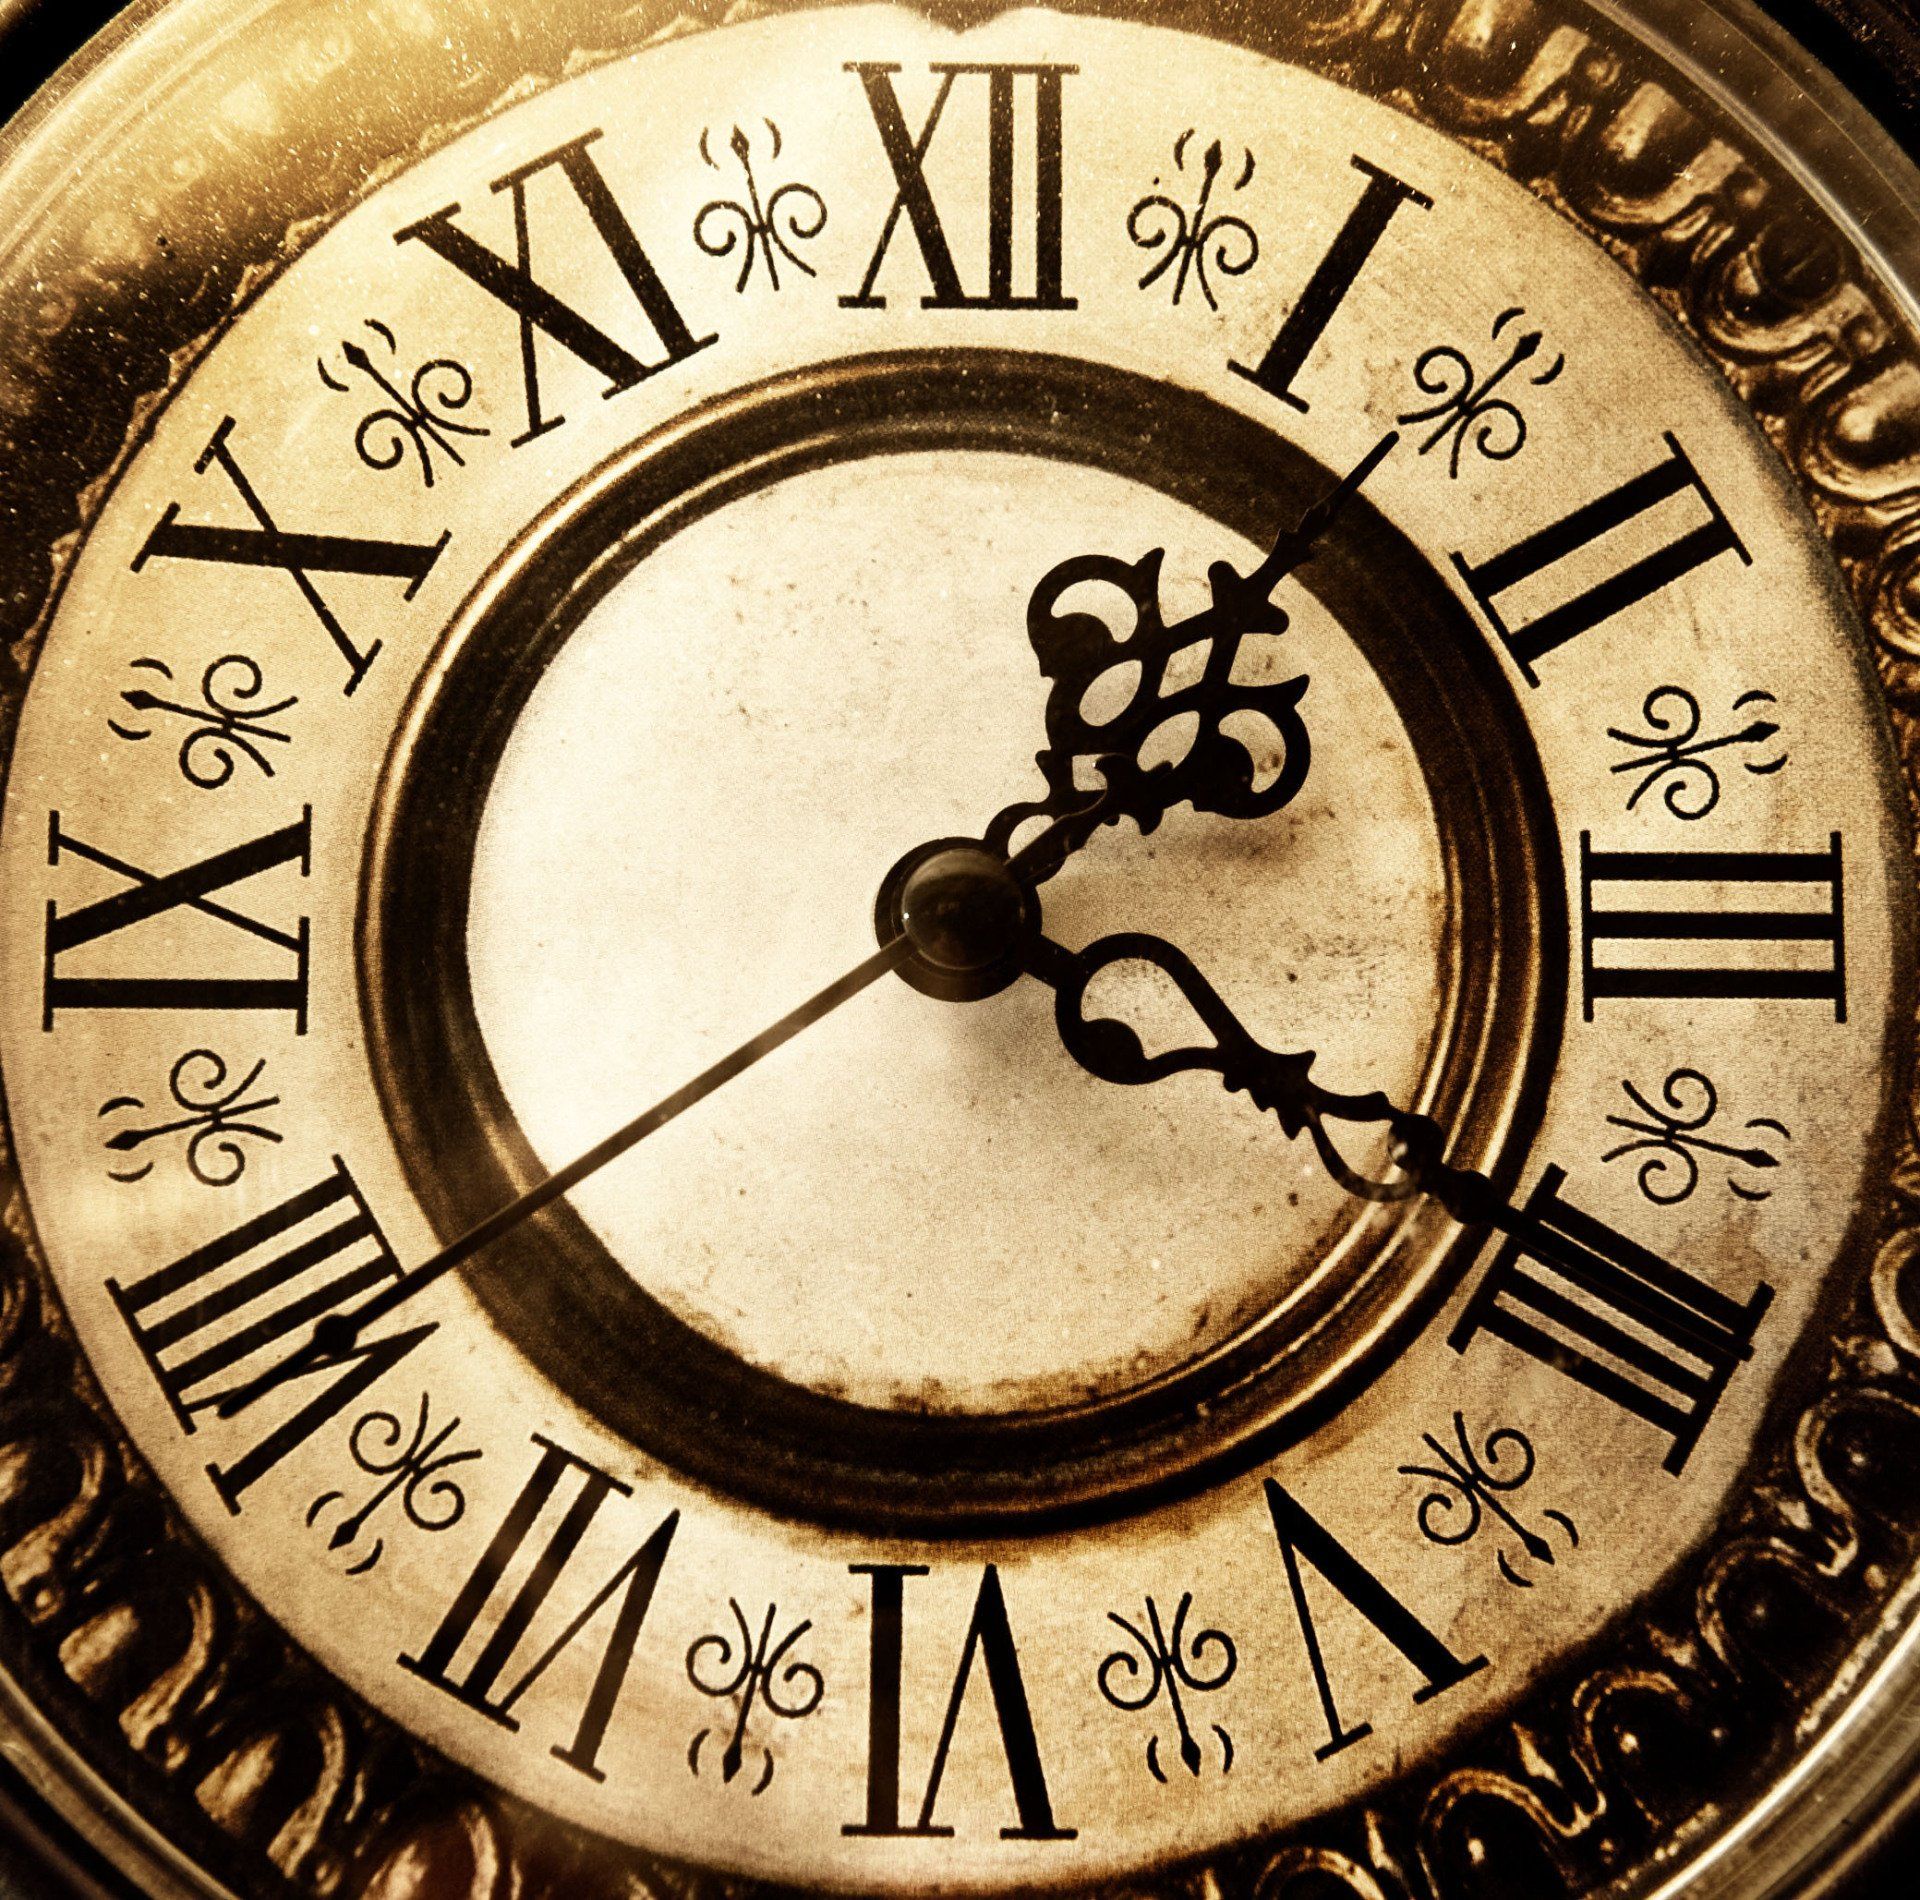 Картинку про часы. Старинные часы. Красивые старинные часы. Циферблат старинных часов. Часы циферблат.